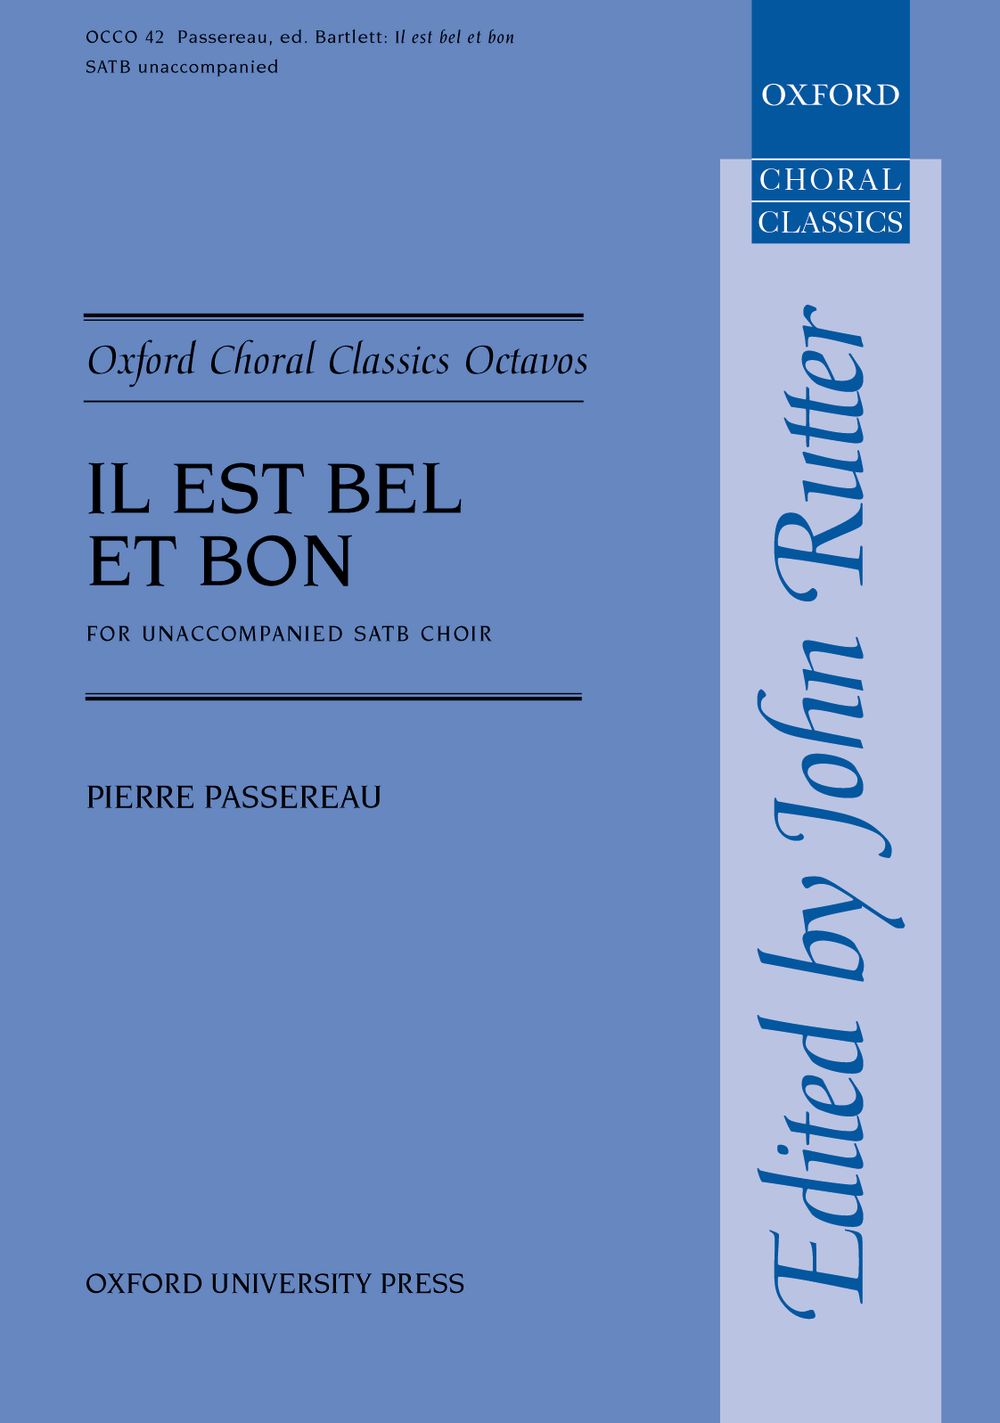 Pierre Passereau: Il est bel et bon: Mixed Choir: Vocal Score